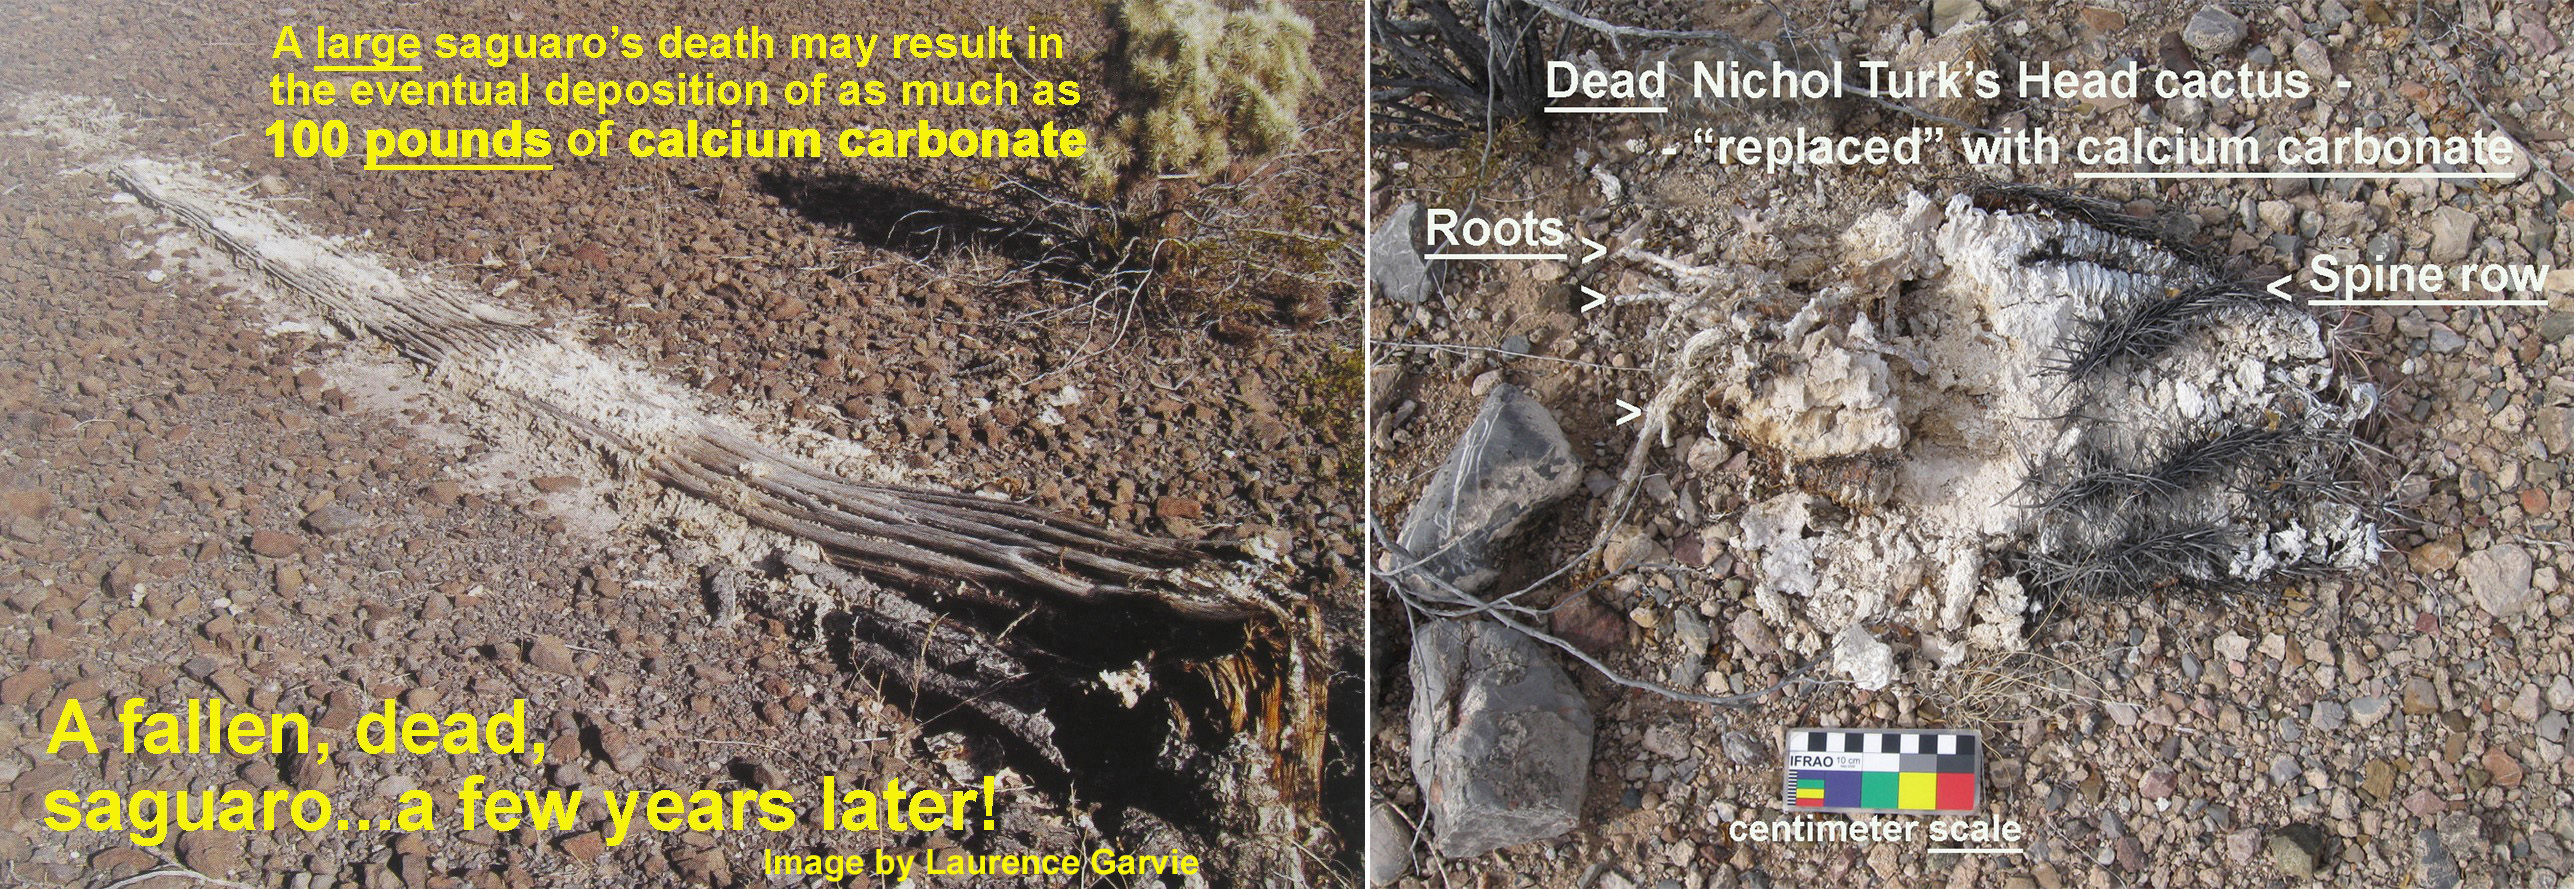 cactus images showing calcium carbonate